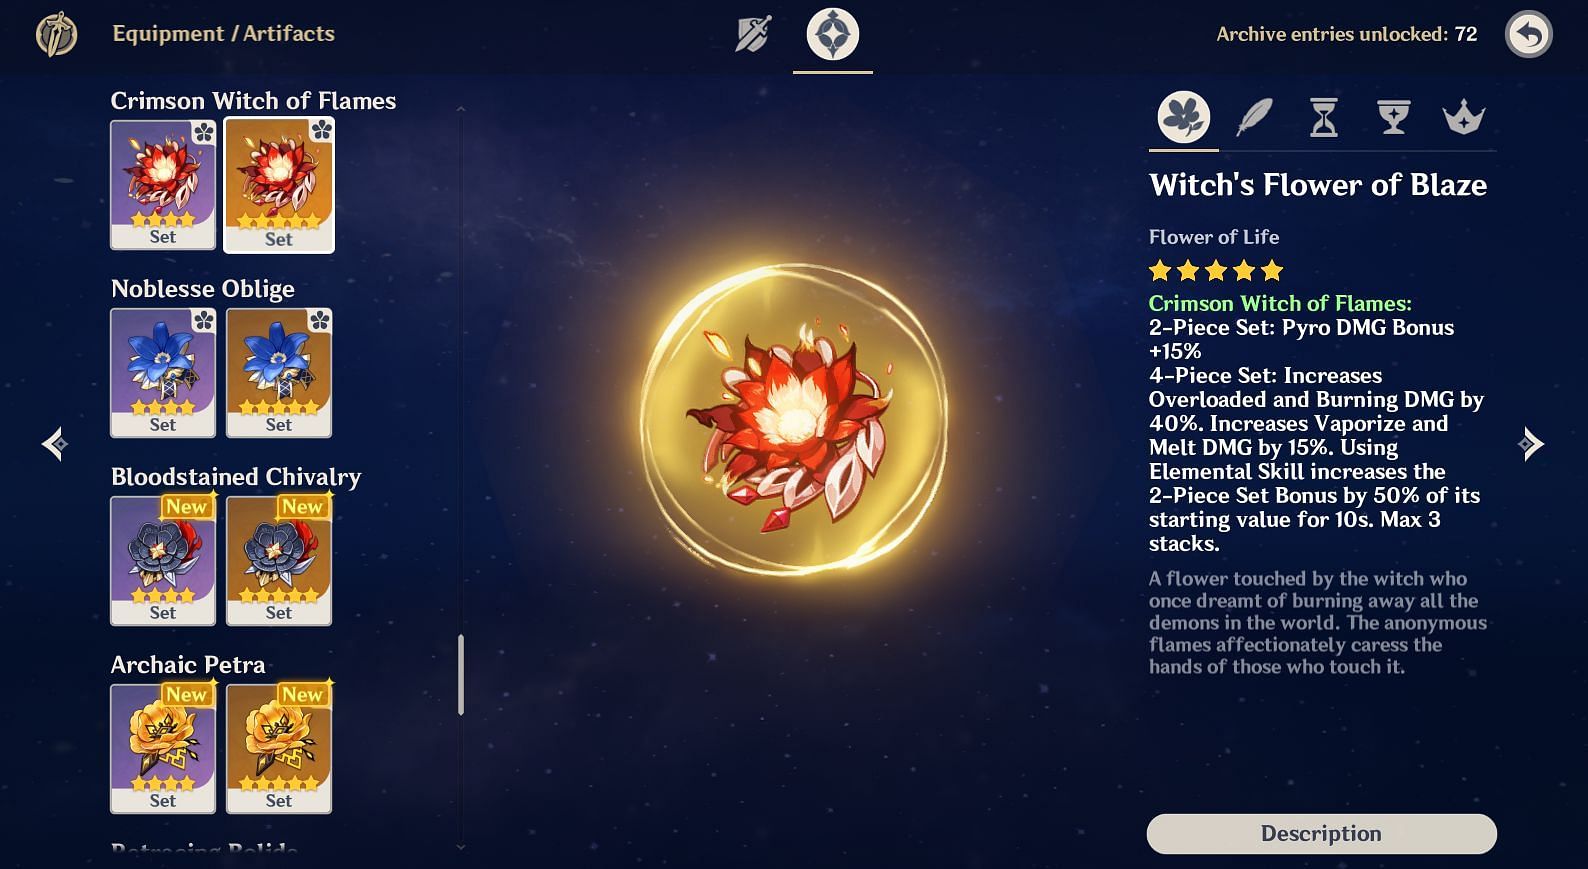 Crimson Witch of Flames description (Image via Genshin Impact)